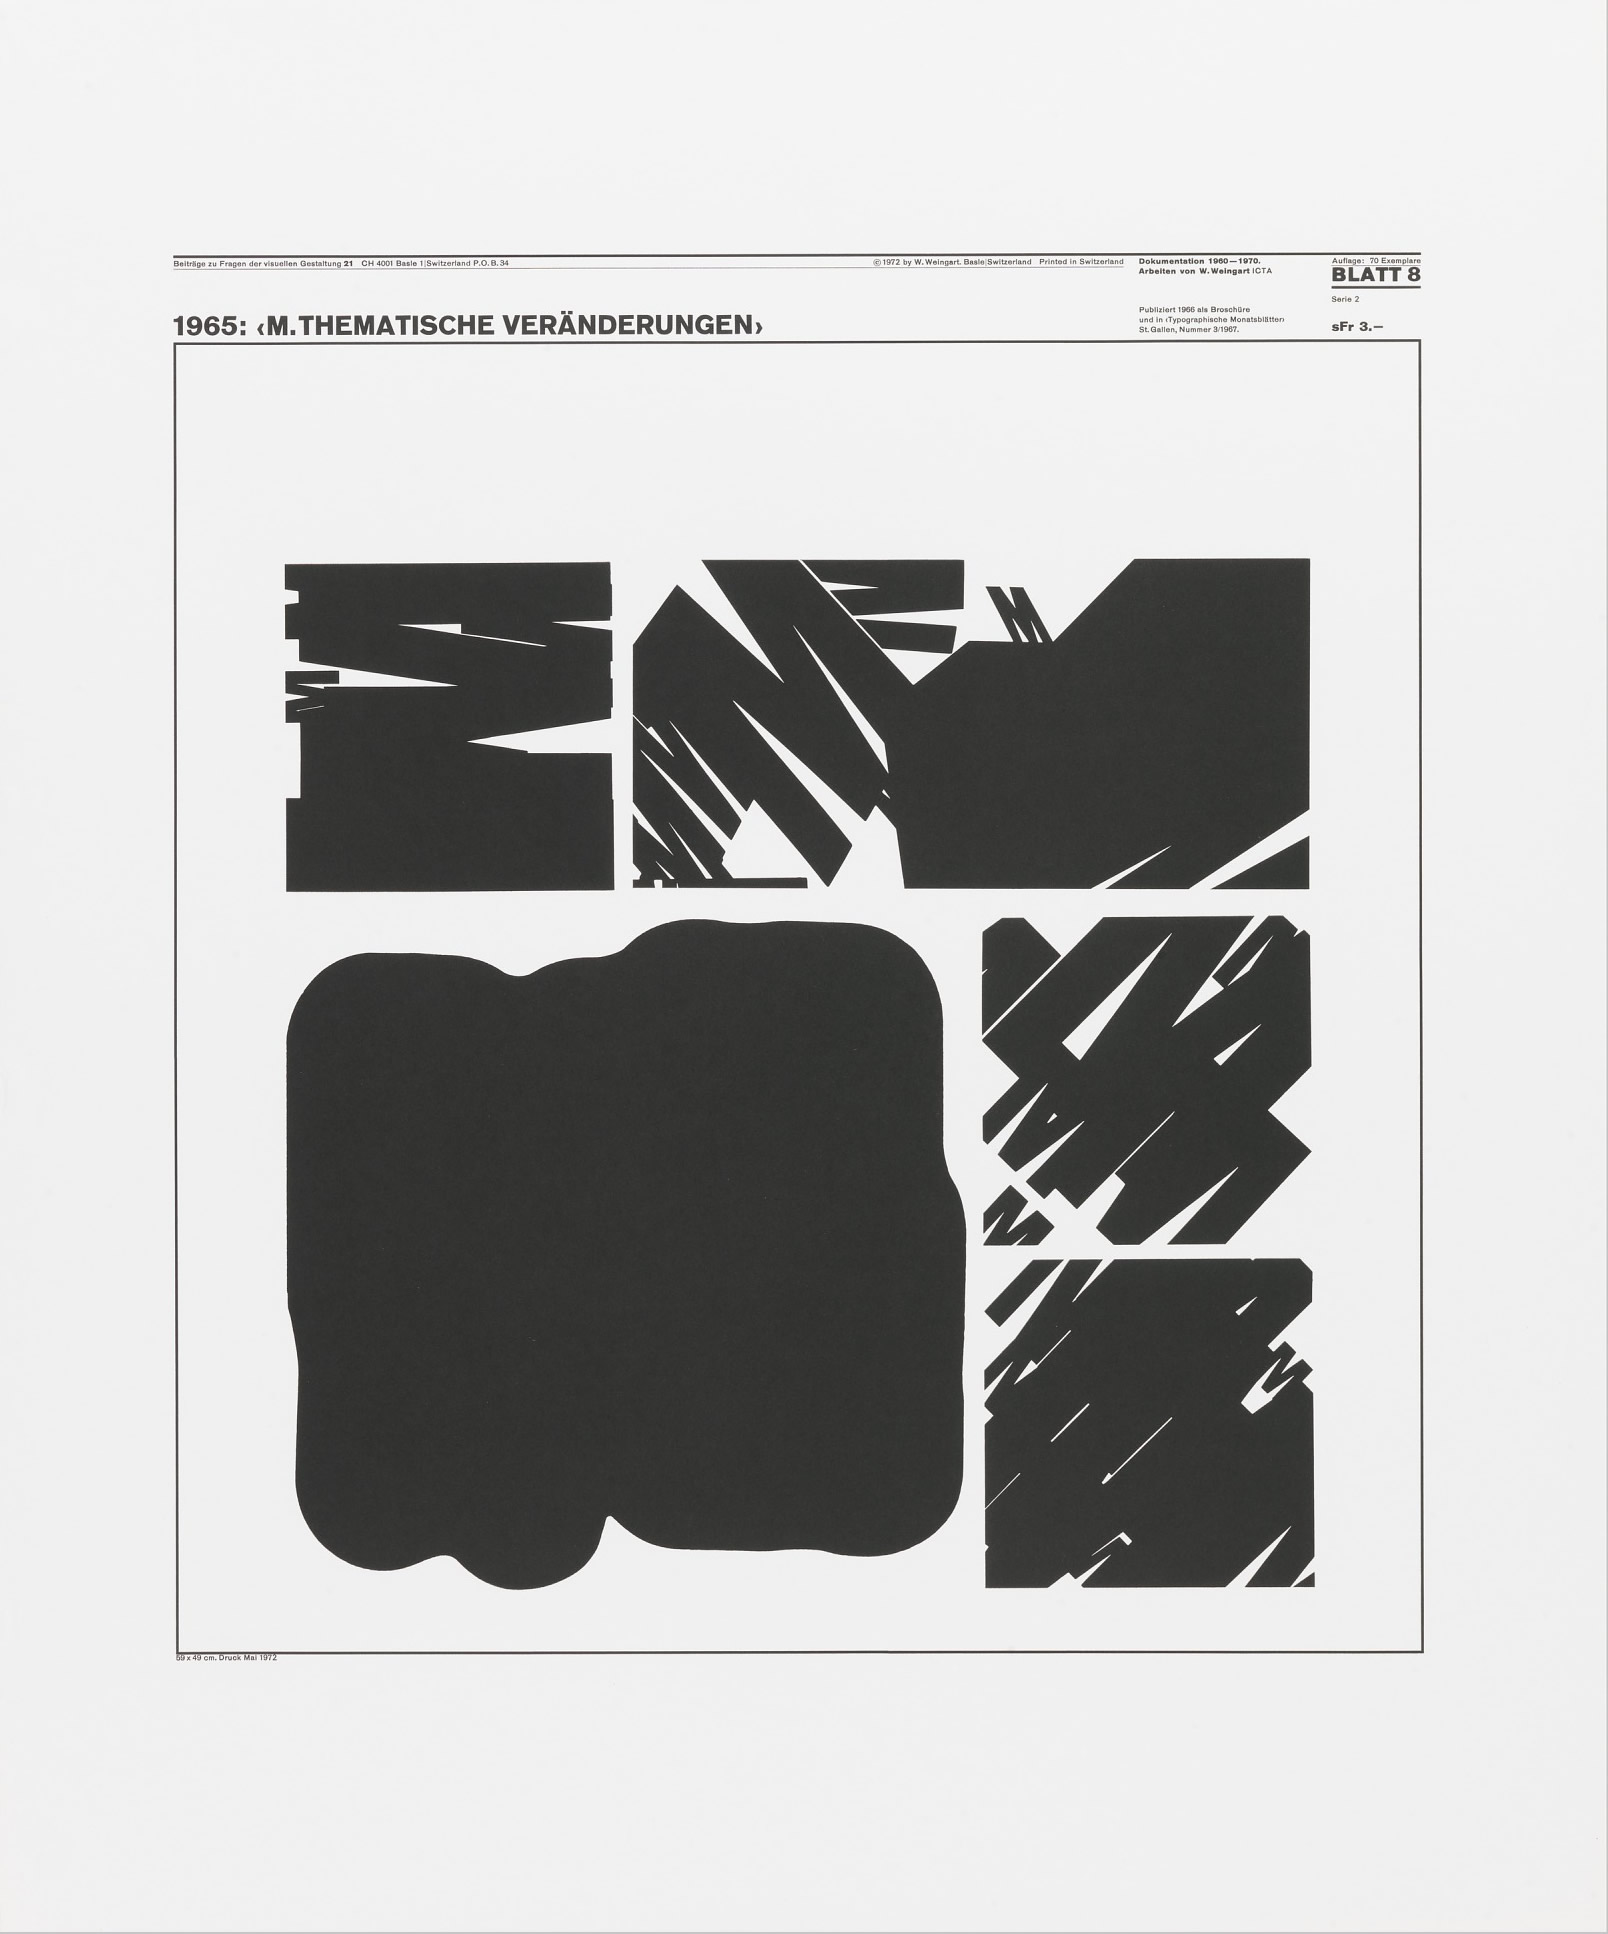 Wolfgang Weingart: Beiträge zu Fragen der visuellen Gestaltung 21, Blatt 8 from the portfolio Dokumentation 1960—1970, Arbeiten von W. Weingart, Designed 1965. Lithograph. (58.74 x 48.9 cm)